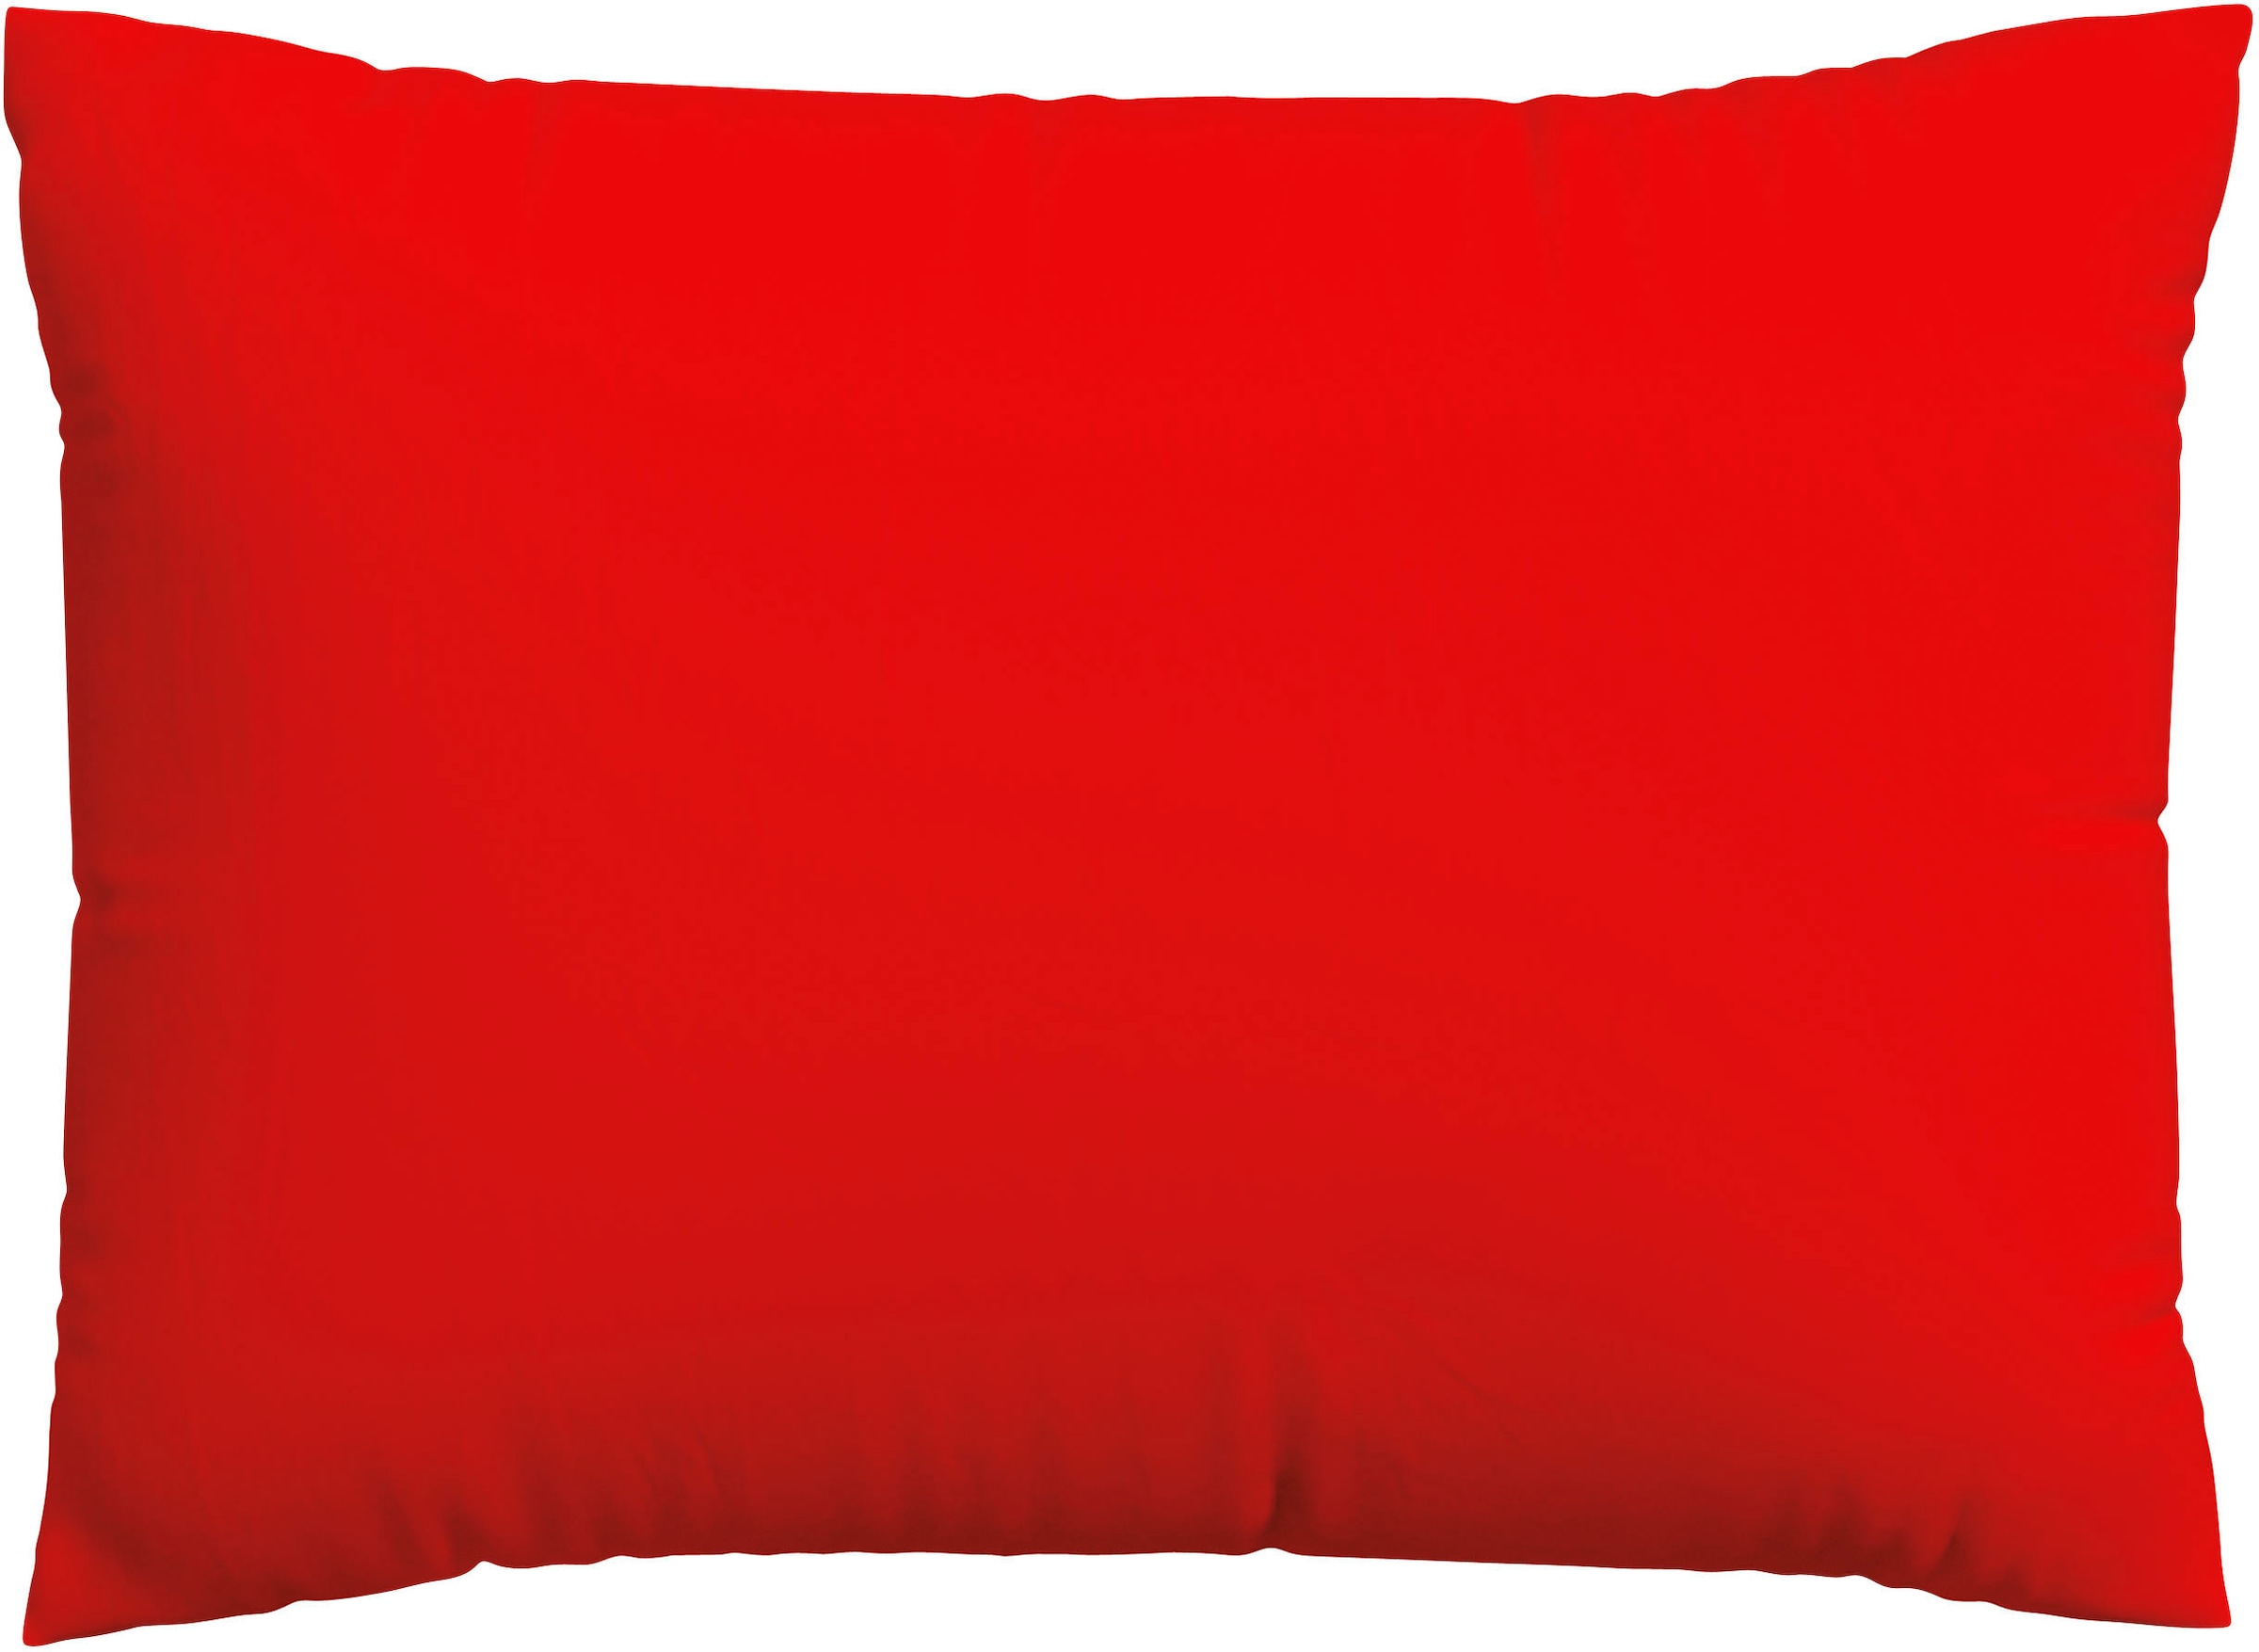 Schlafgut Kissenbezug »Knitted Jersey aus Bio-Baumwolle mit Elasthan, bügelfrei,«, (1 St.), besonders fein gestrickt, Kissenhülle mit farbigem Reissverschluss